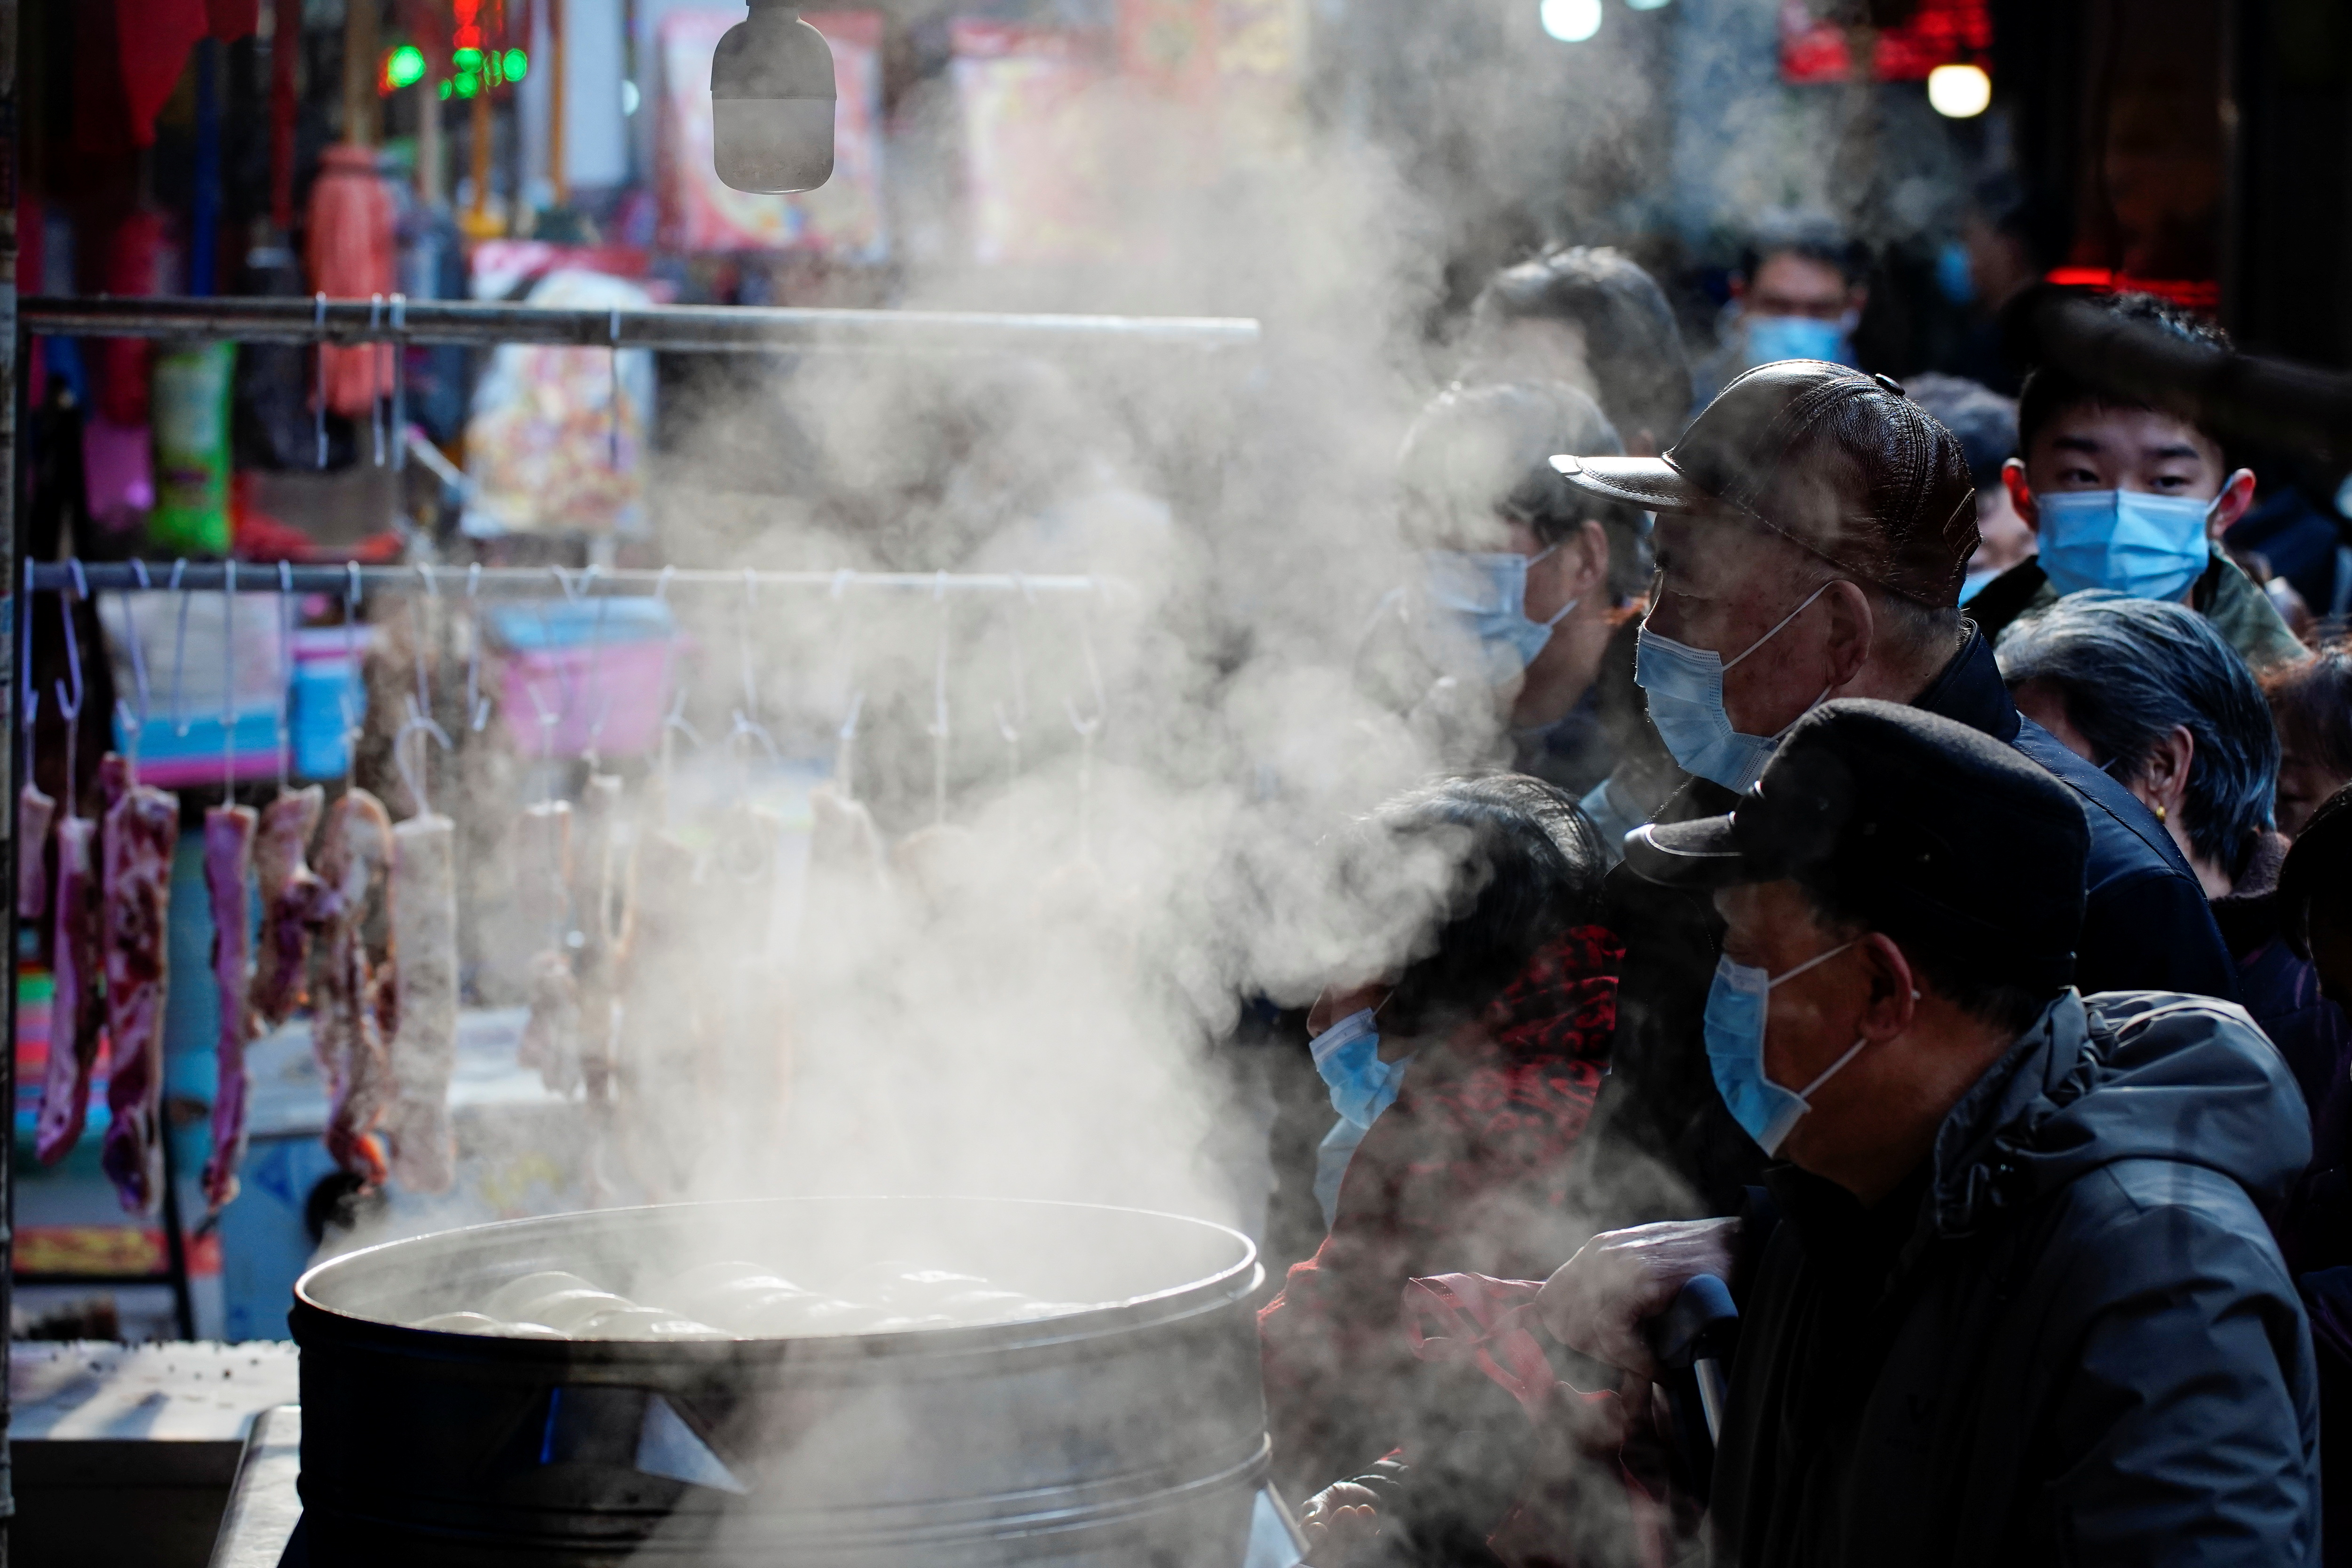 FOTO DE ARCHIVO: Personas con mascarillas esperan para comprar comida en un puesto de comida al vapor en un mercado callejero, tras un brote de la enfermedad del coronavirus (COVID-19) en Wuhan, provincia de Hubei, China 8 de febrero de 2021 (Reuters)